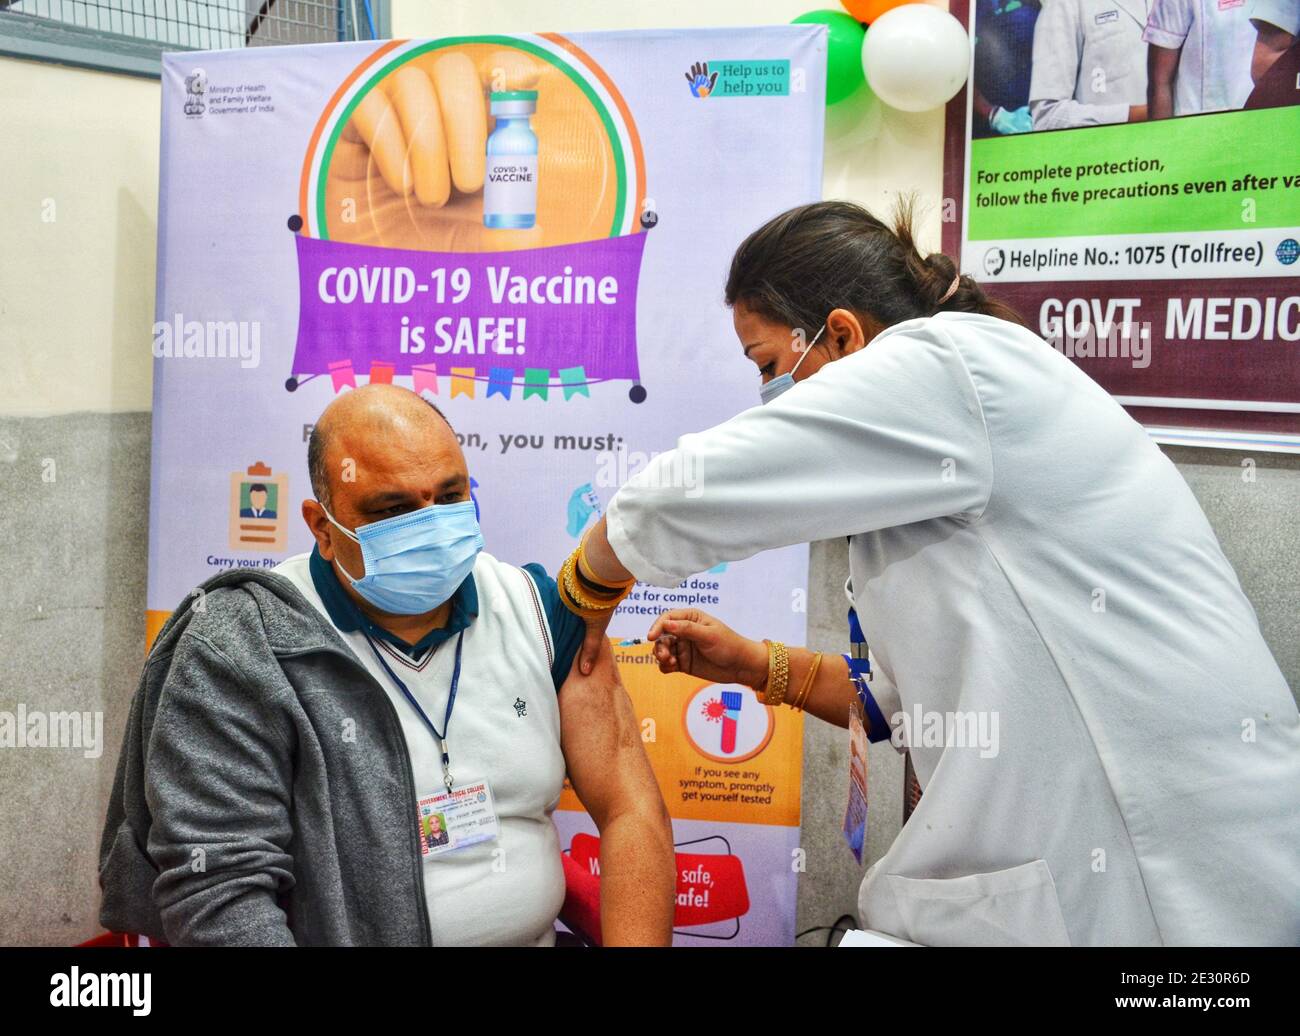 Un operatore sanitario che riceve un vaccino COVID-19 Covisield durante la vaccinazione in India presso un ospedale di Jammu il 16 gennaio 2021. (Foto di Bikas Bhagat / INA Photo Agency / Sipa USA) Foto Stock